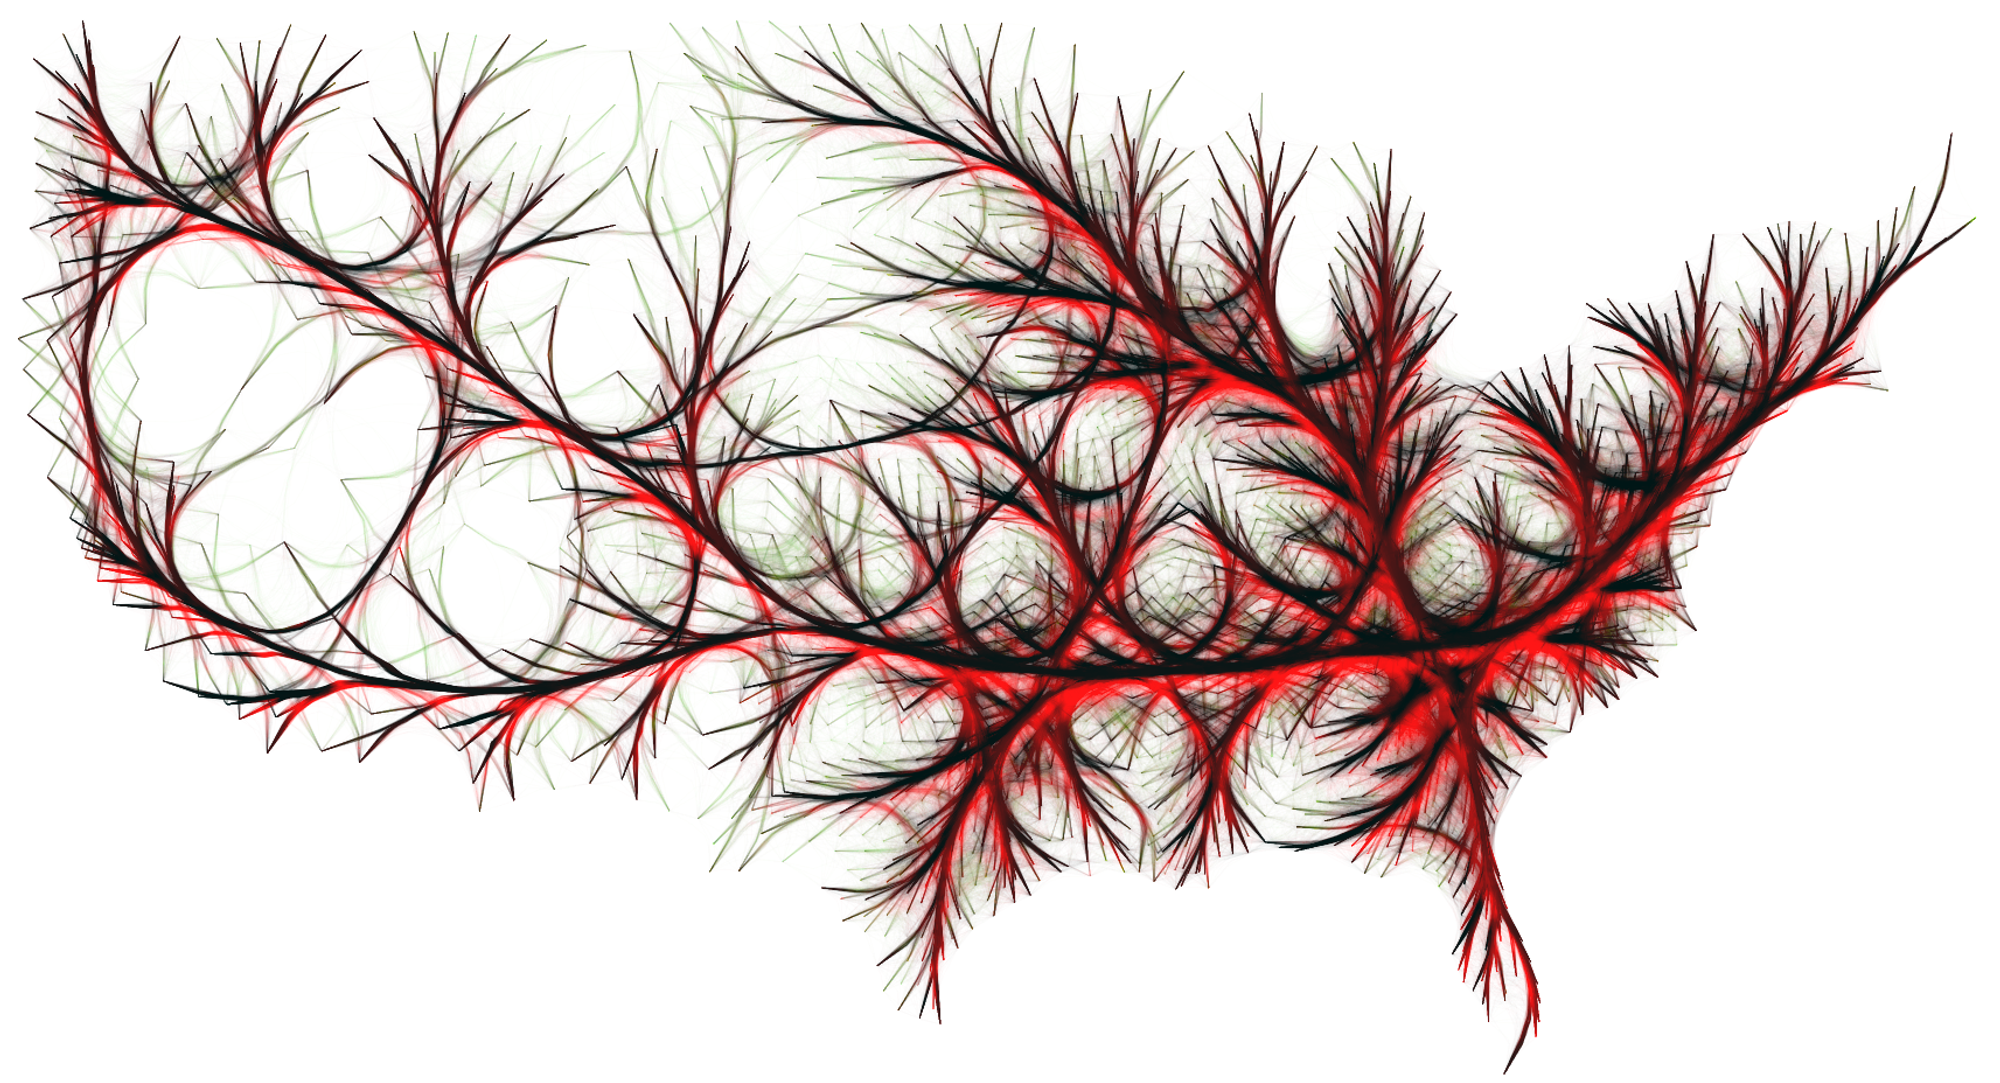 Un exemple de Bundling pour une meilleure visualisation de réseaux (C. Hurter) 